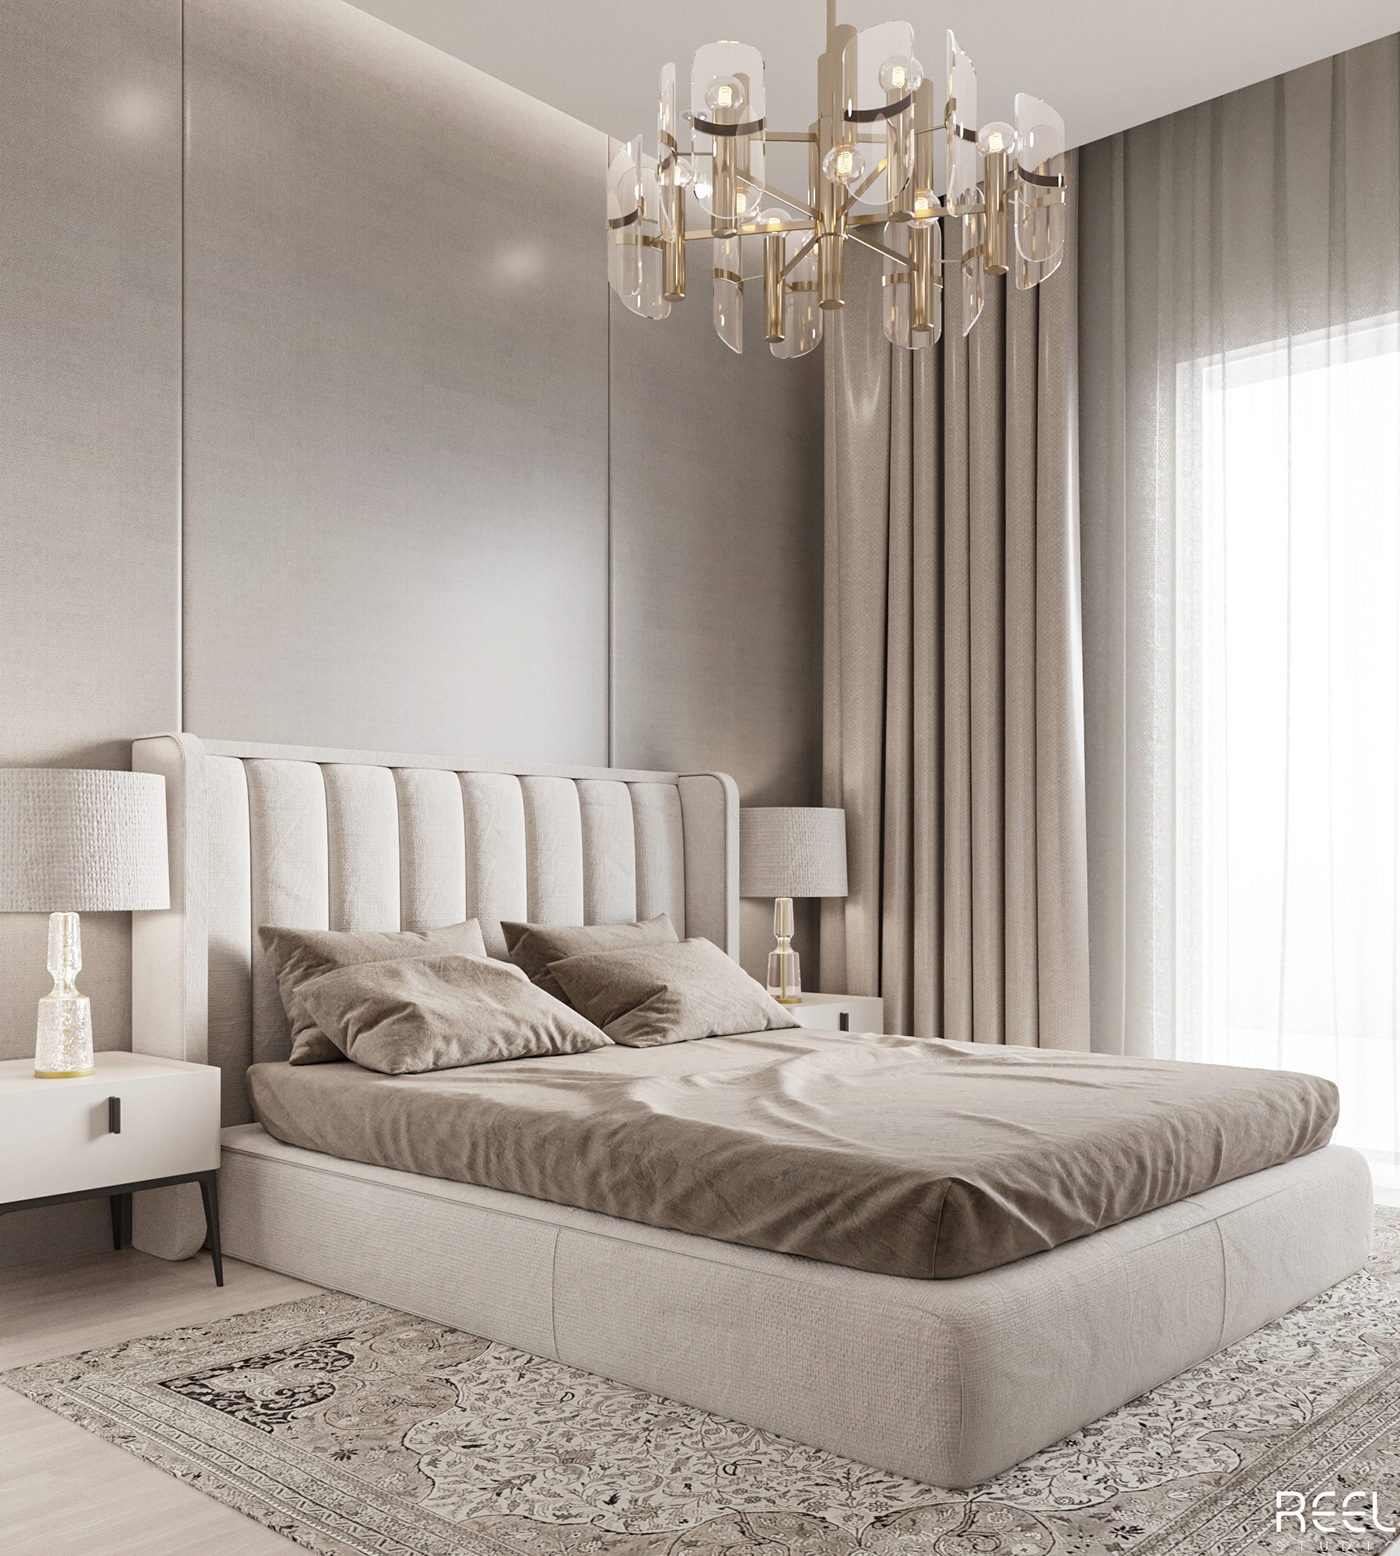 bedroom bedroom design cozy decor Interior interior design  interiordesign reel studio54 tolko